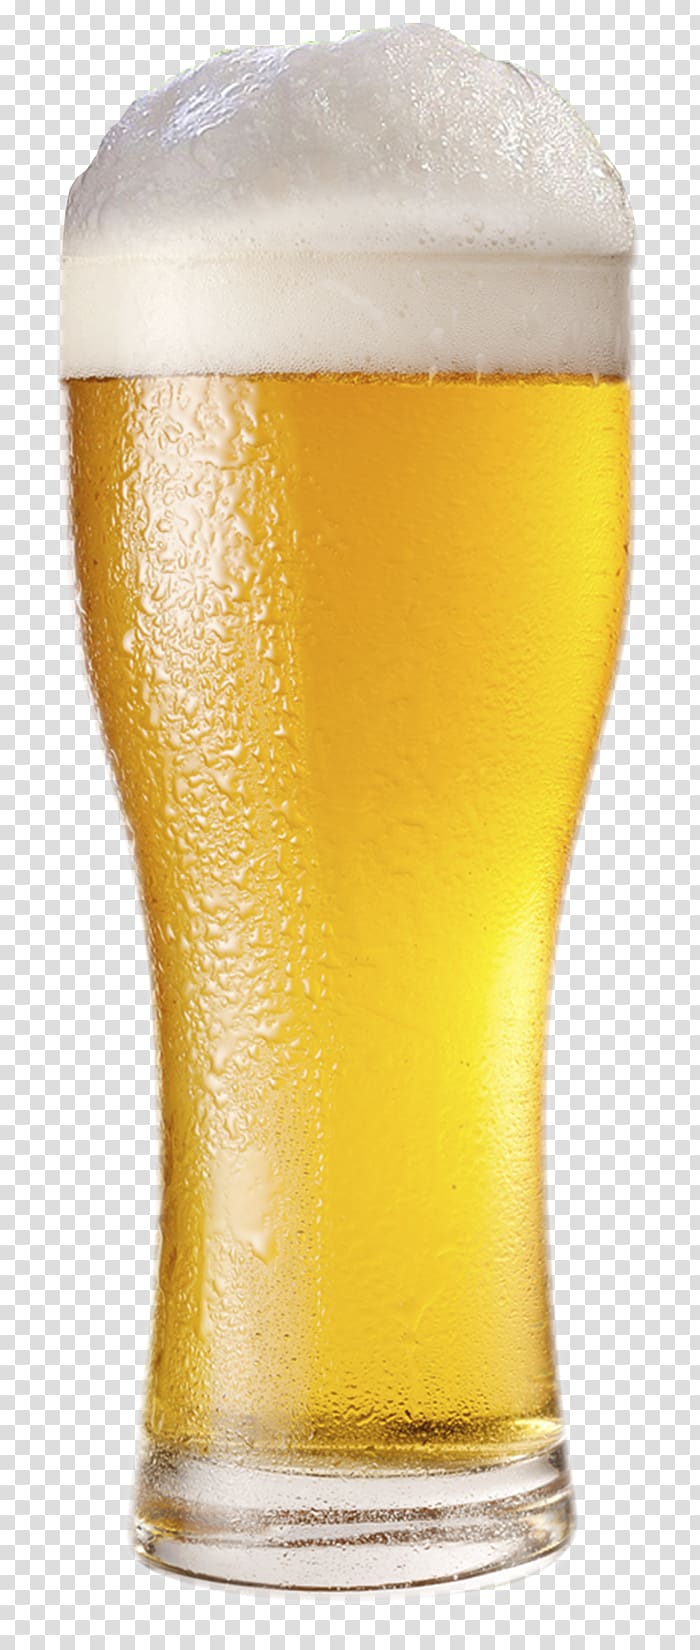 filled pilsner glass , Lager Beer India pale ale, beer transparent background PNG clipart